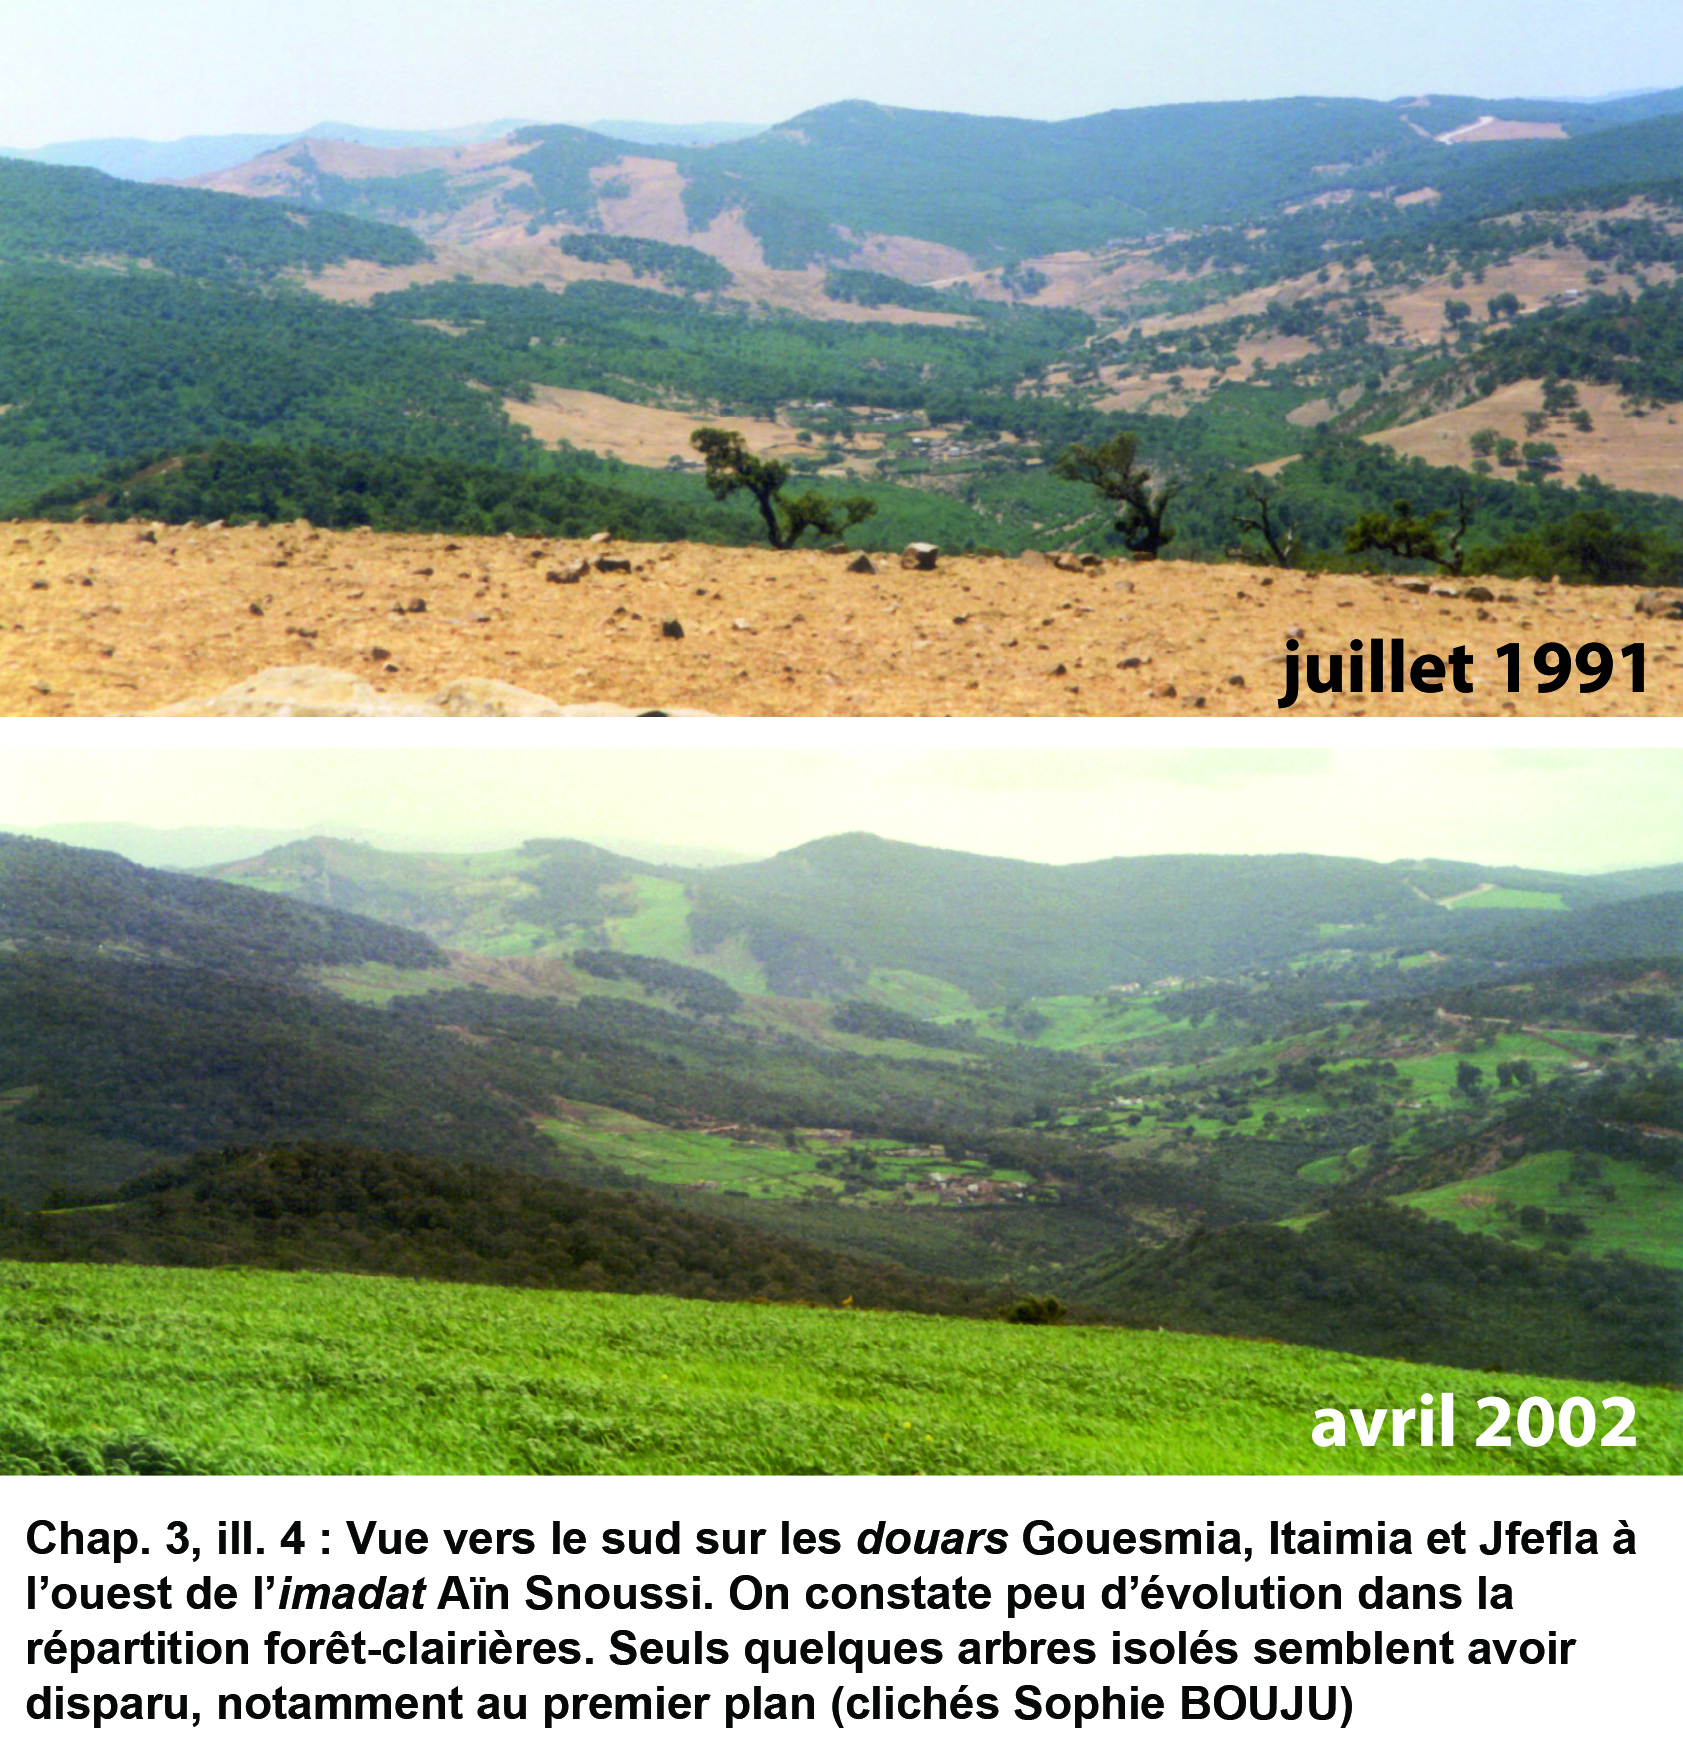 Illustration 4 : Évolution des paysages de 1991 à 2002 (imadat Aïn Snoussi)